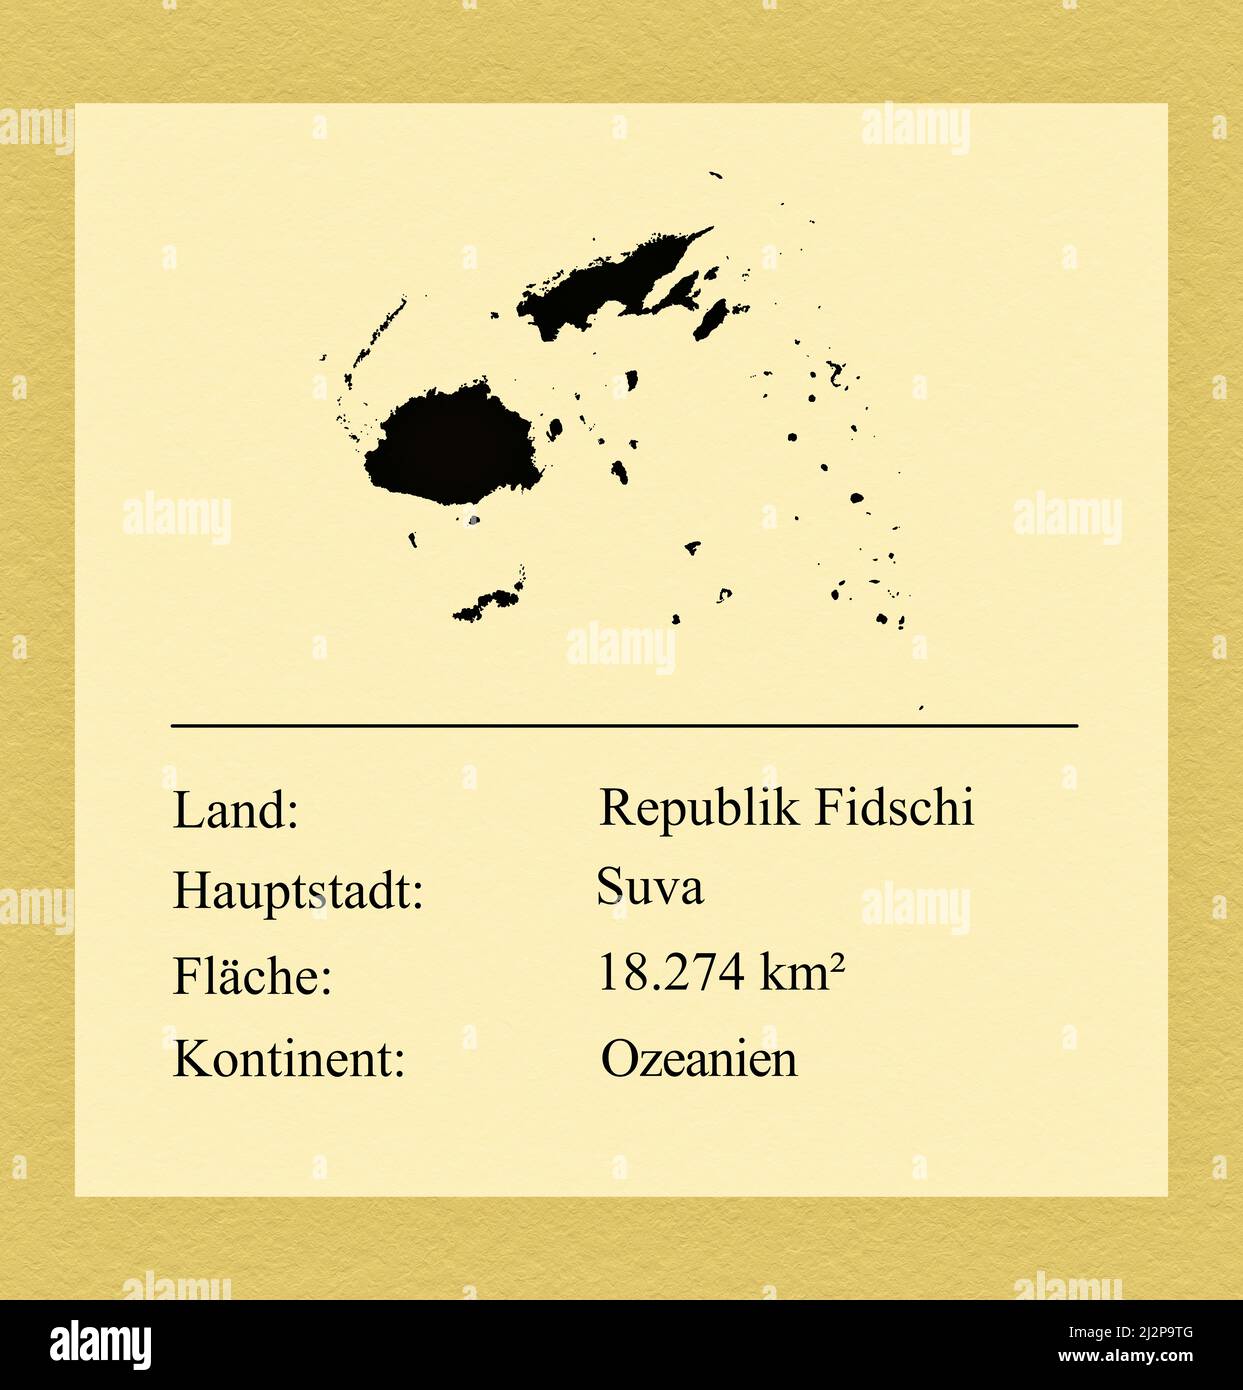 Umrisse des Landes Republik Fidschi, darunter ein kleiner Steckbrief mit Ländernamen, Hauptstadt, Fläche und Kontinent Stock Photo